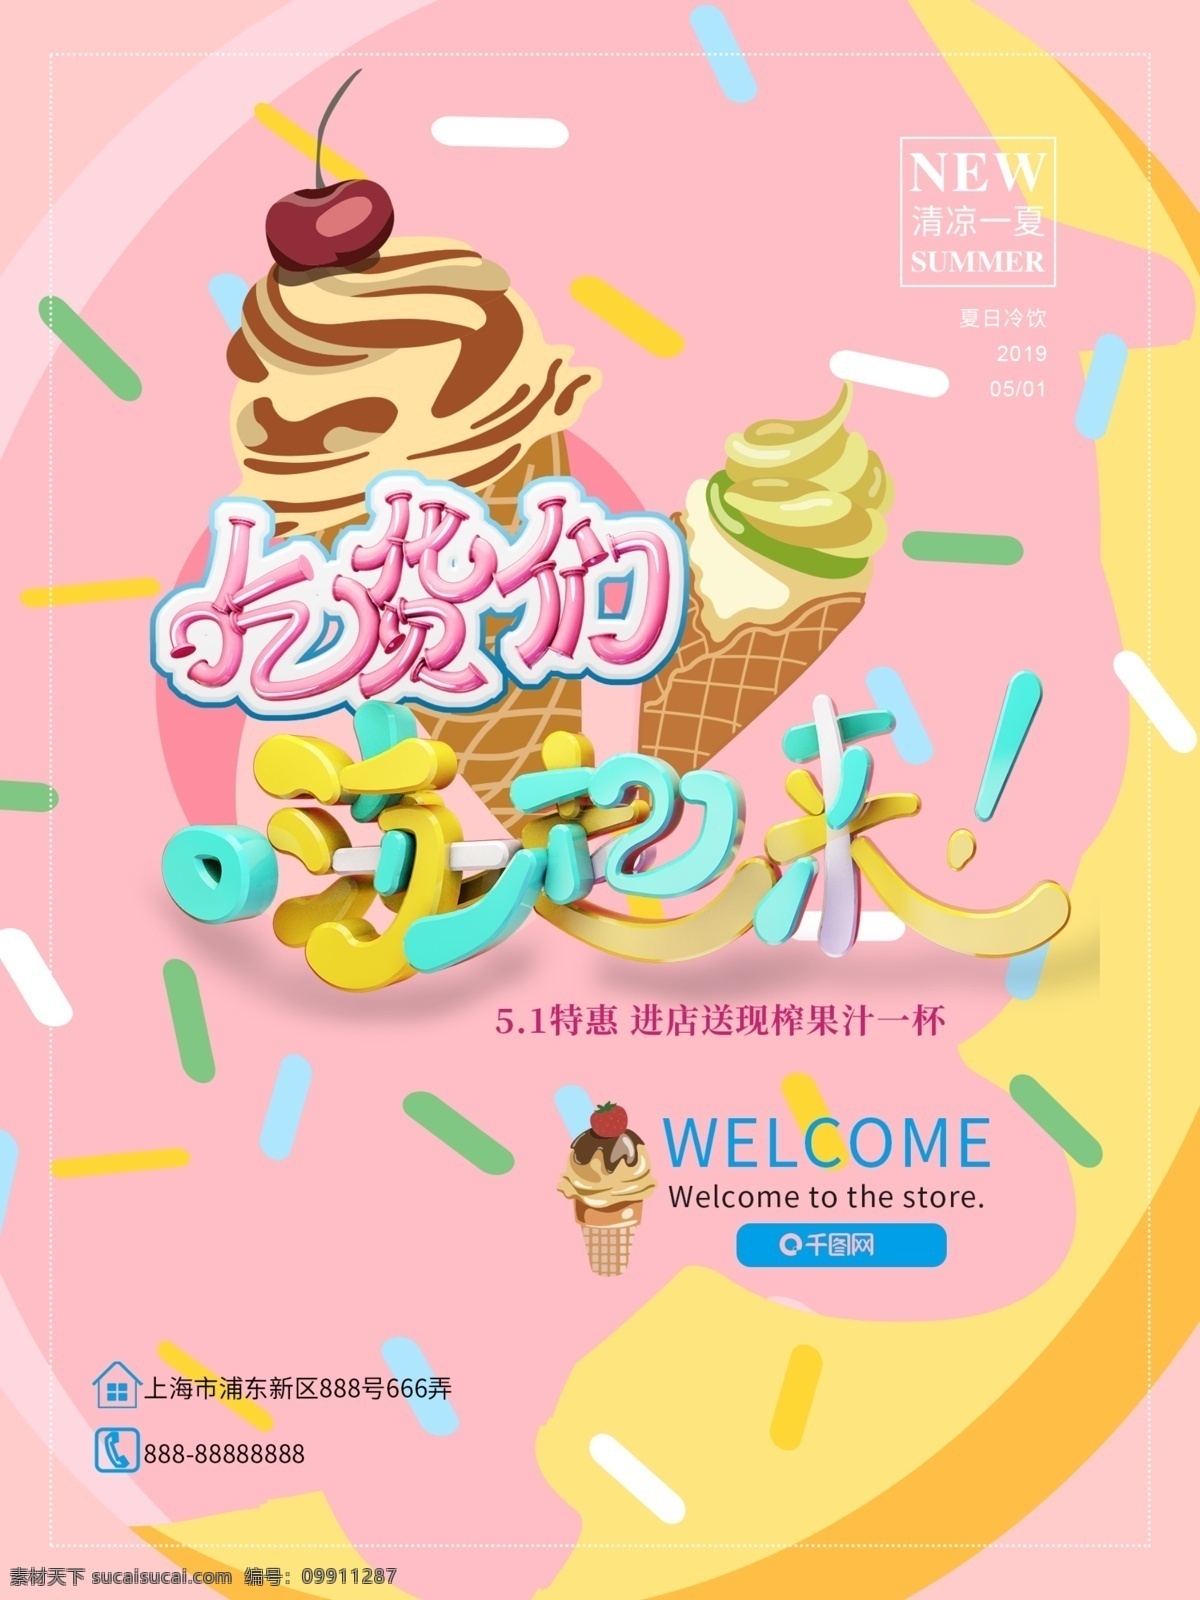 冰淇淋 冷饮 吃货 嗨 起来 海报 模版 吃货们嗨起来 海报模版 甜甜圈 粉色系